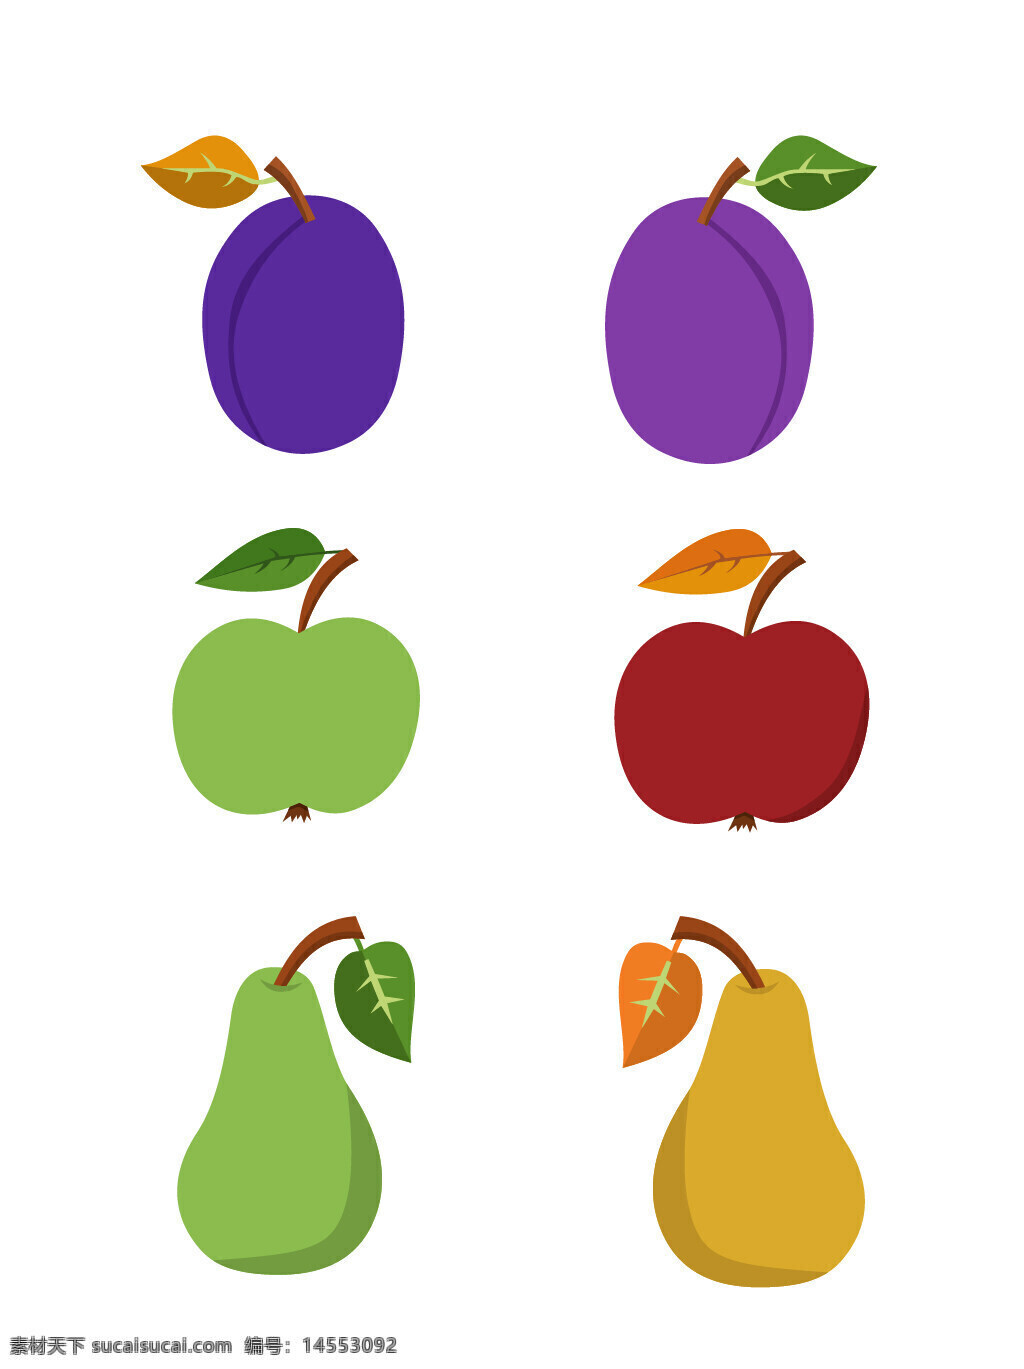 西梅 苹果 梨子 水果 瓜果 食物 手绘水果 矢量水果 手绘素材 矢量素材 新鲜水果 植物